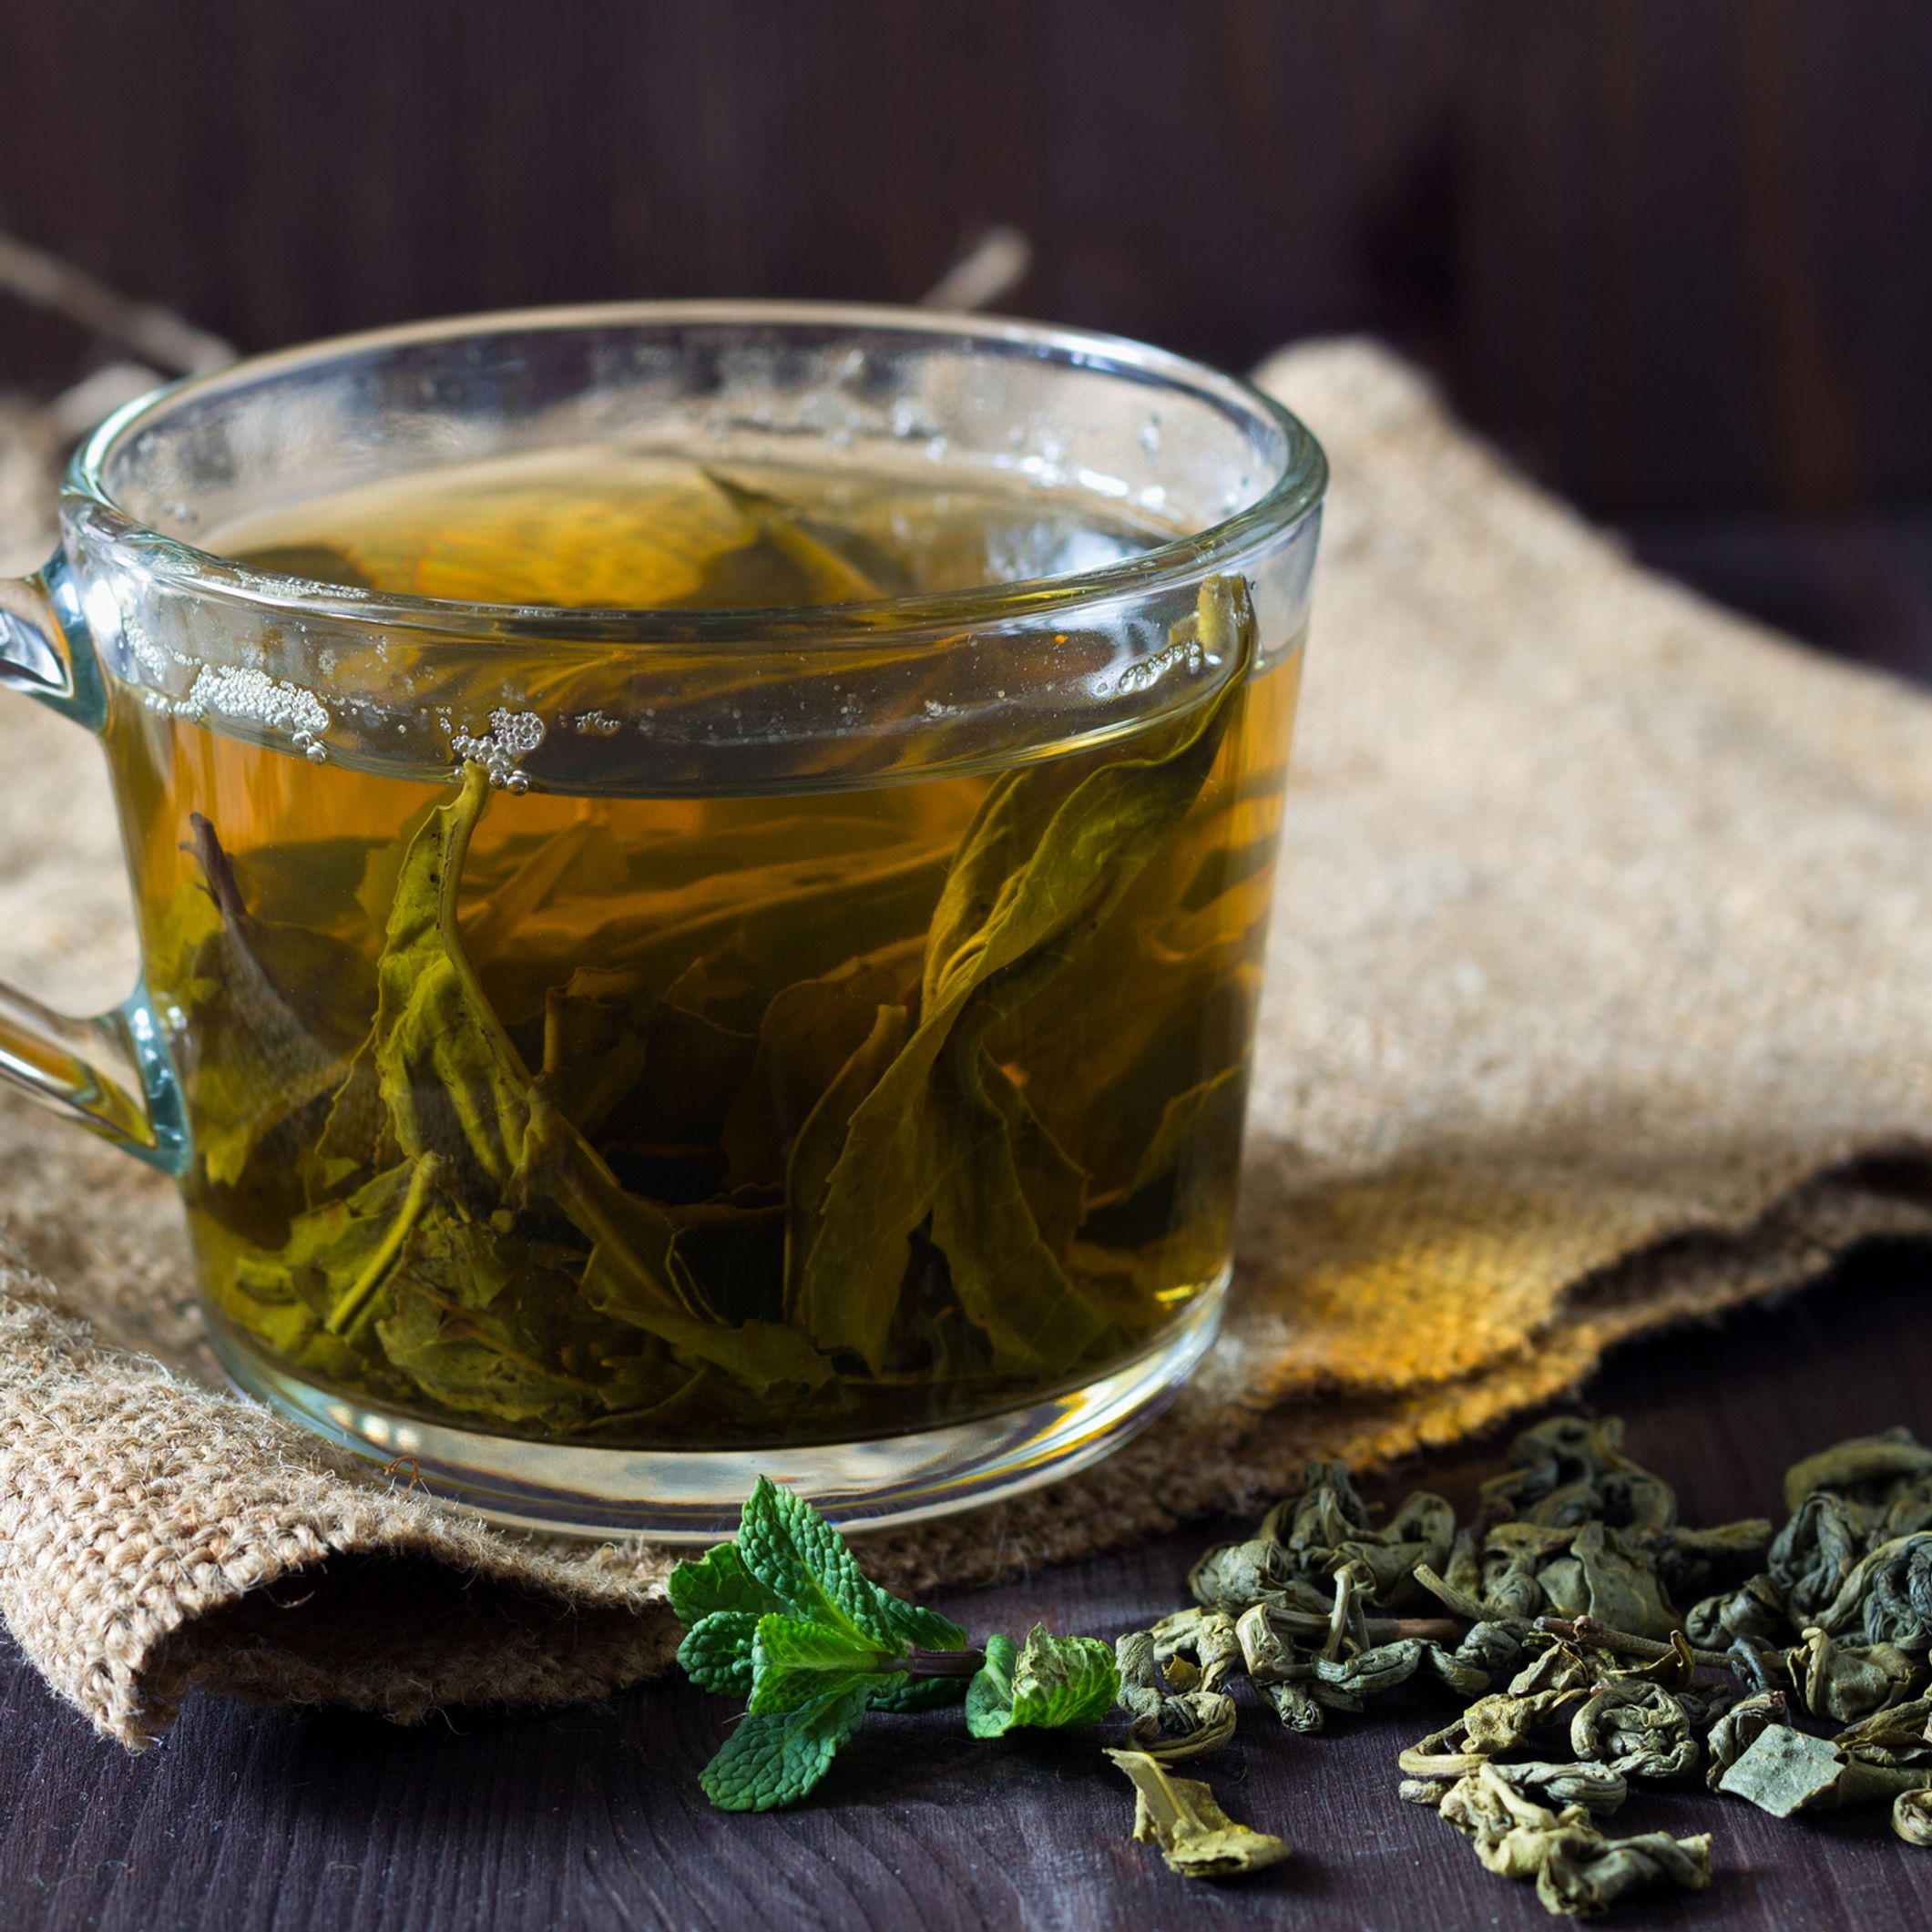 Acheter du thé en vrac, pas plus cher et sans pesticides - T pour Thé